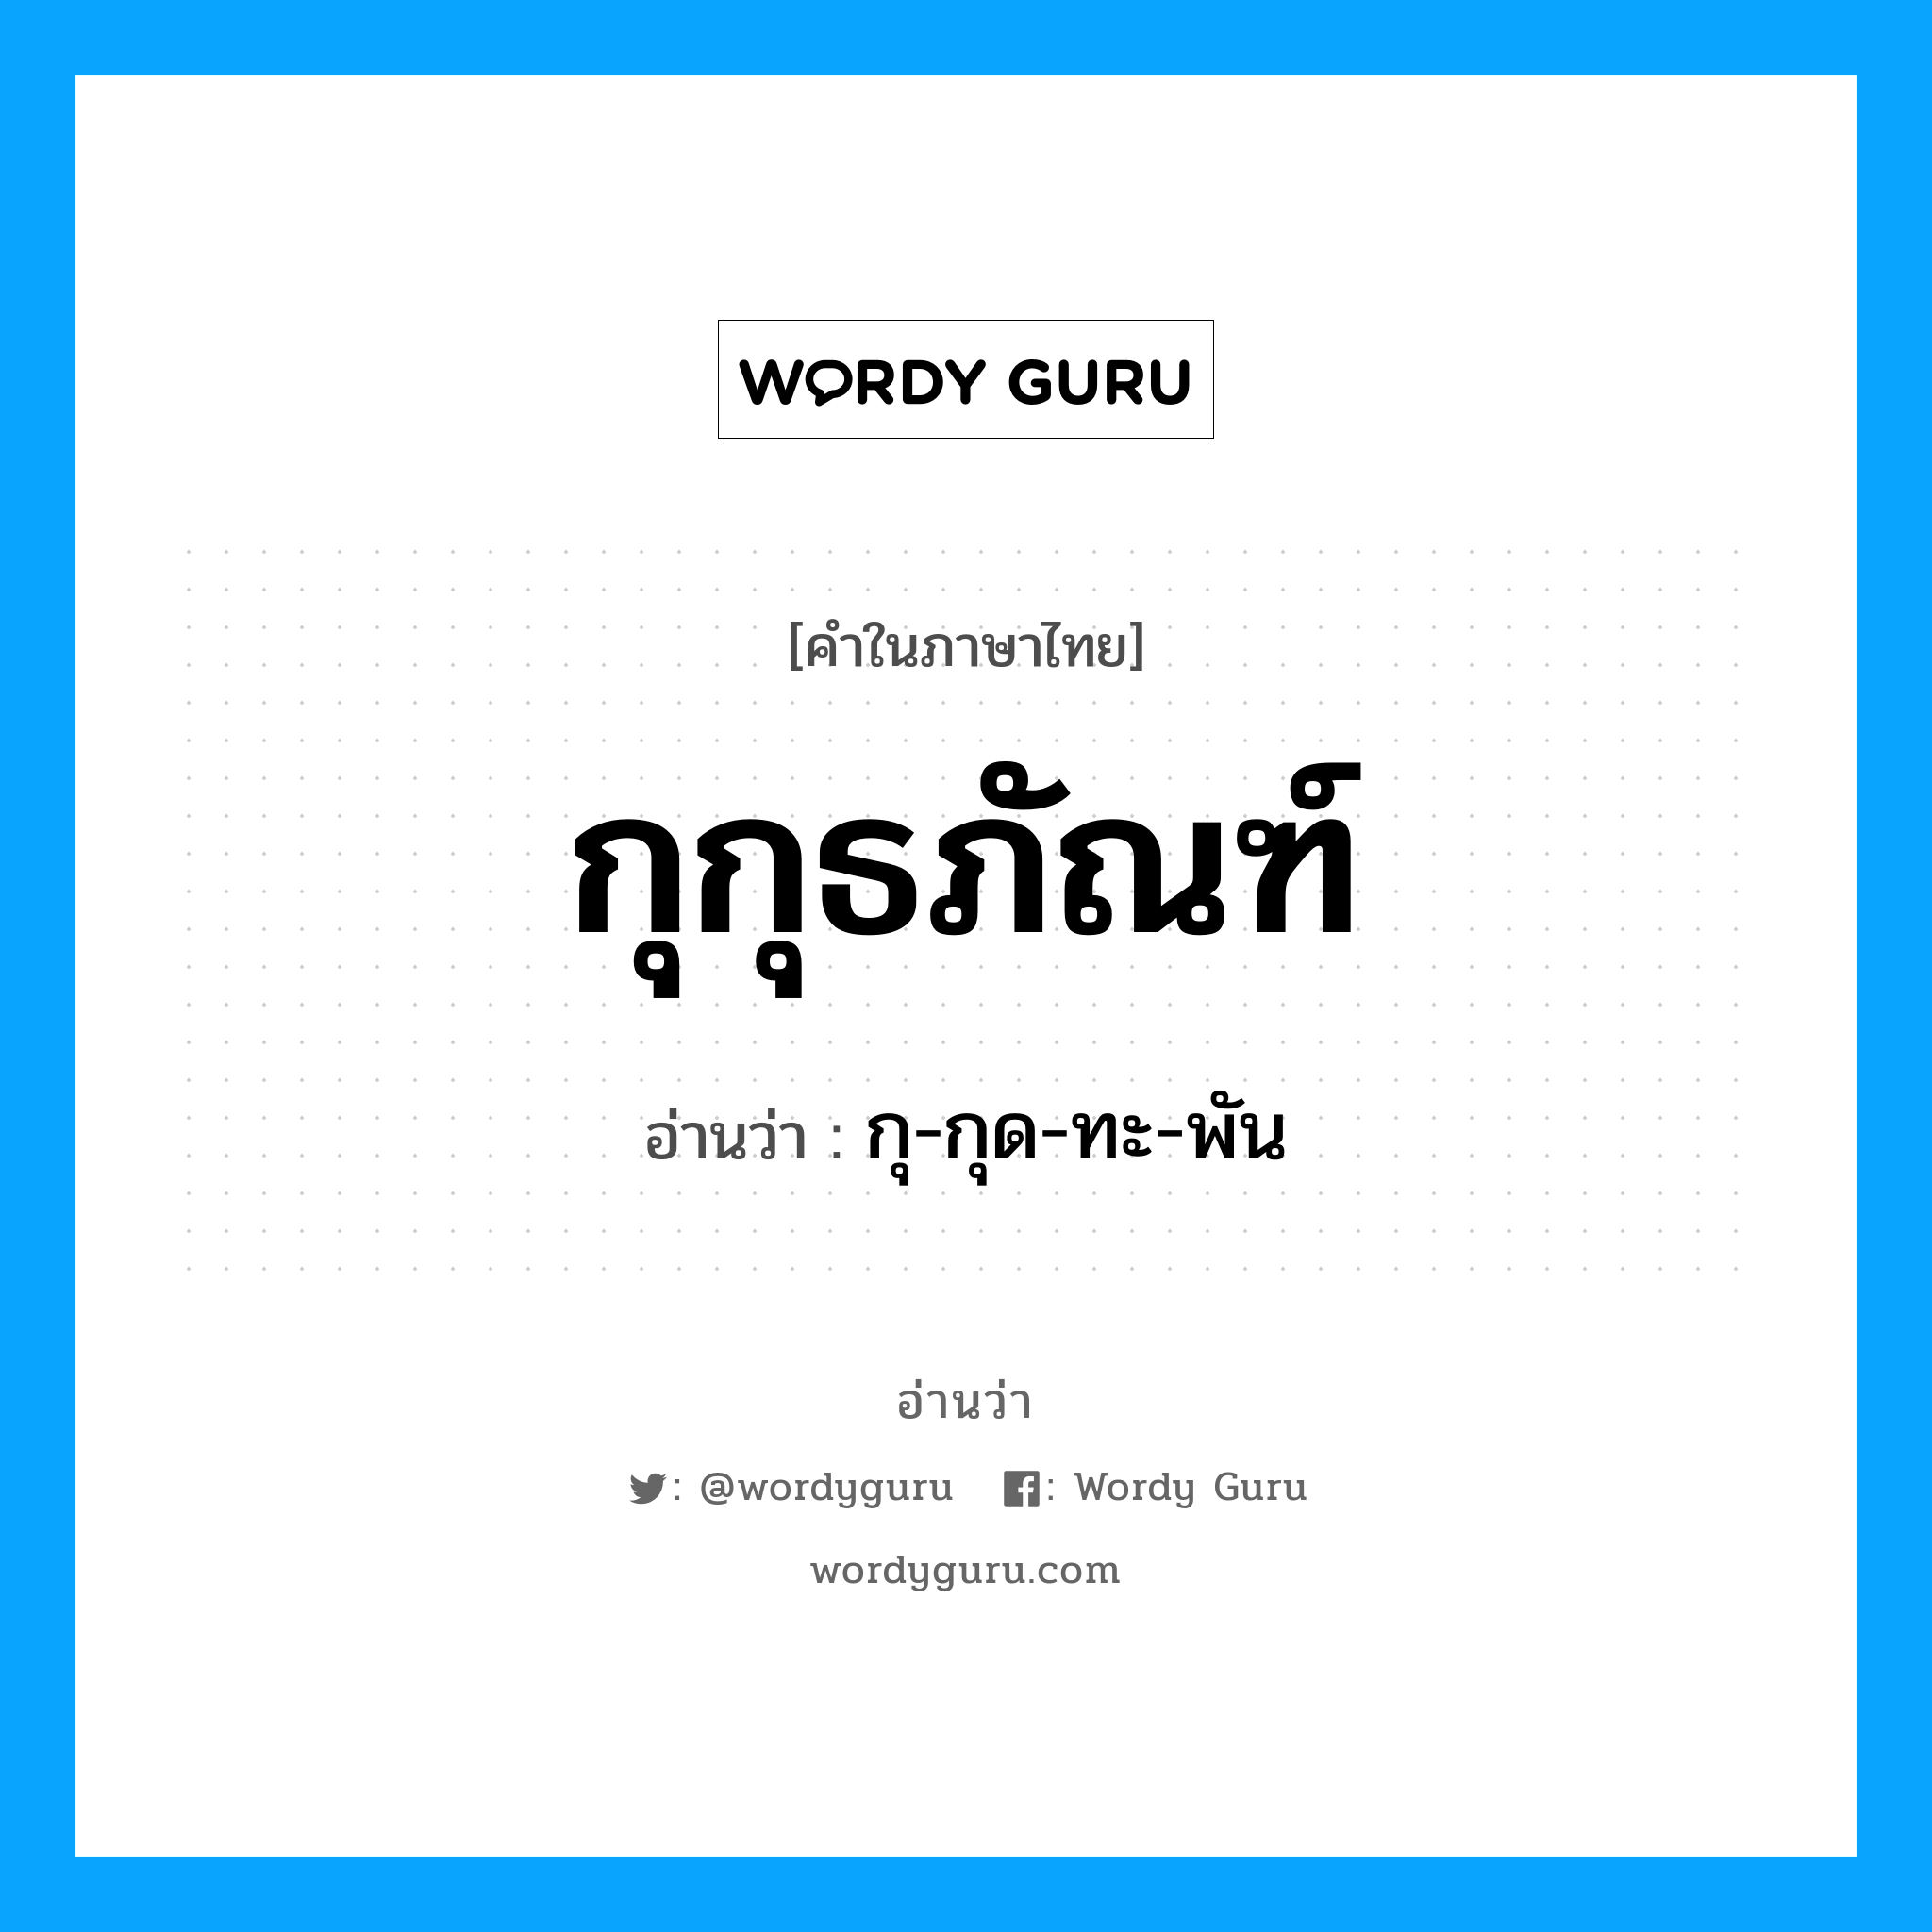 กุ-กุด-ทะ-พัน เป็นคำอ่านของคำไหน?, คำในภาษาไทย กุ-กุด-ทะ-พัน อ่านว่า กุกุธภัณฑ์